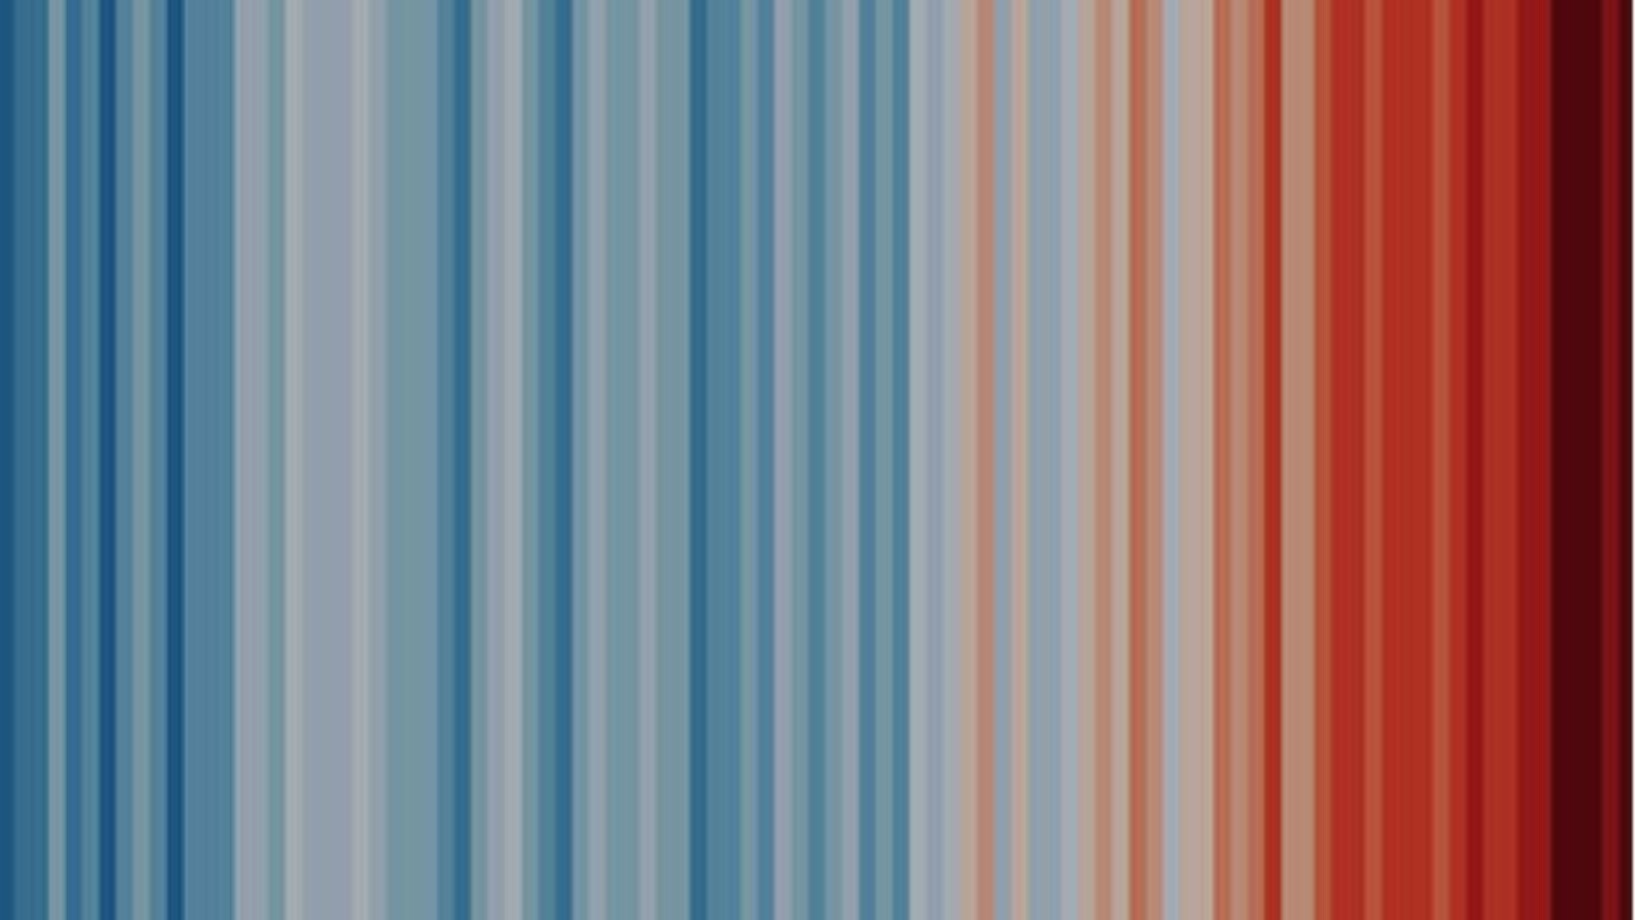 Blaue und rote Balken zeigen die Erwärmung des Klimas